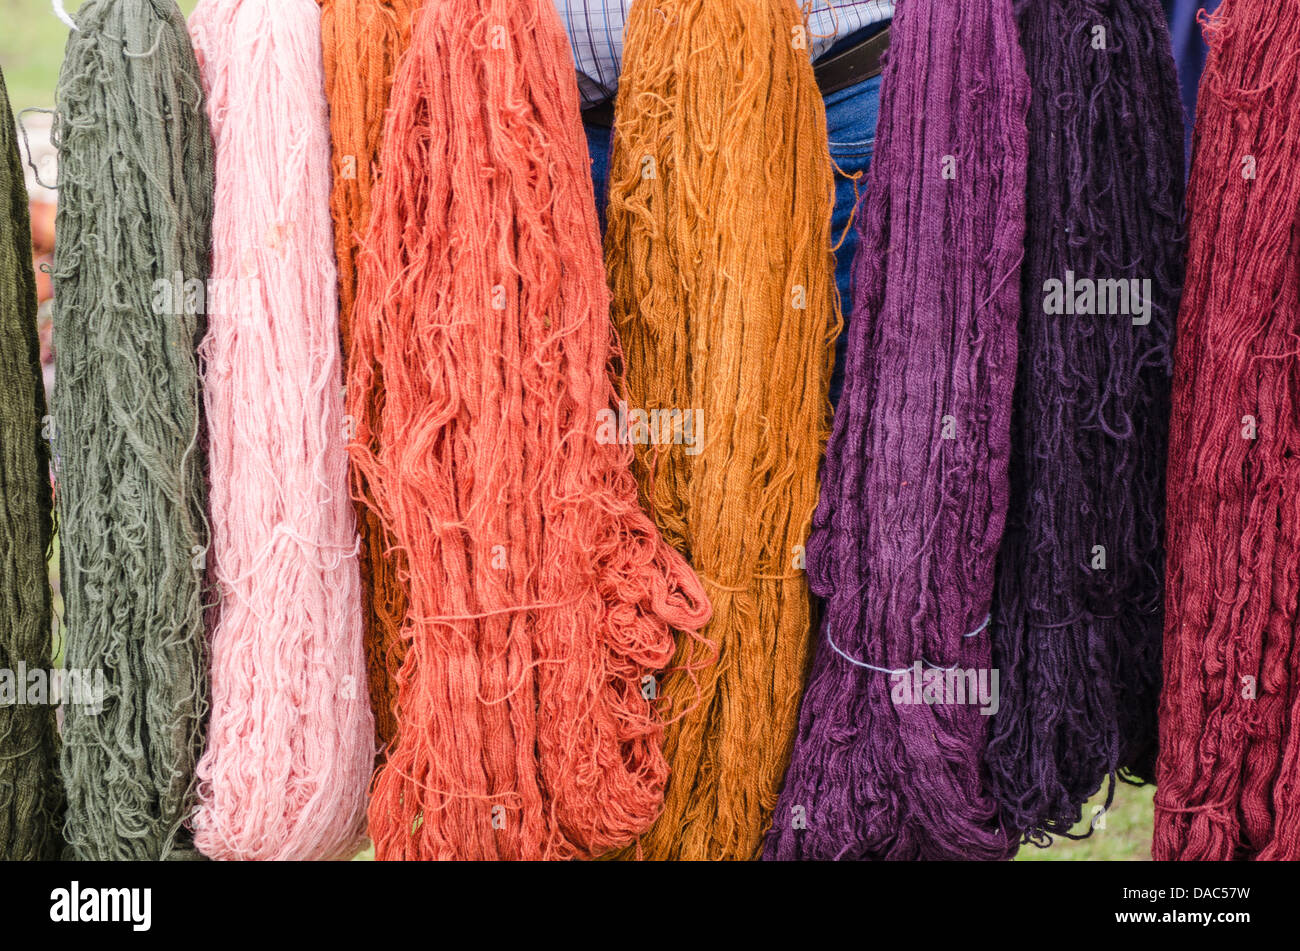 Bunt gefärbte Lama Wolle Textil Garn in Chinchero, Peru. Stockfoto